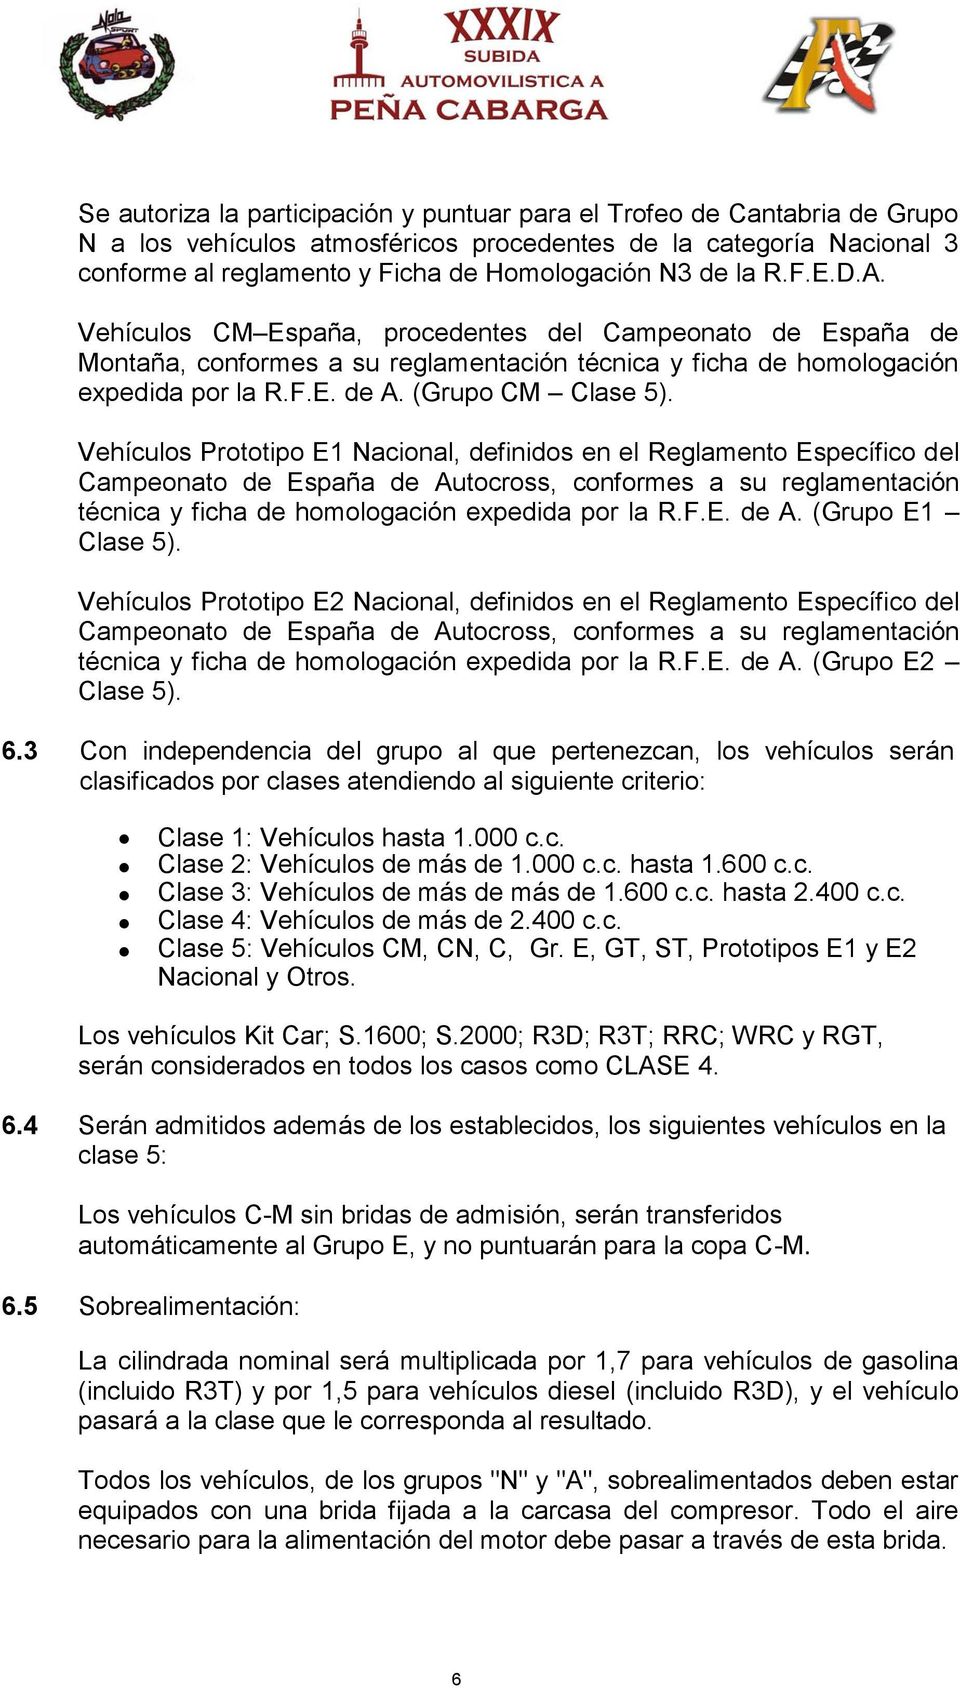 Vehículos Prototipo E1 Nacional, definidos en el Reglamento Específico del Campeonato de España de Autocross, conformes a su reglamentación técnica y ficha de homologación expedida por la R.F.E. de A. (Grupo E1 Clase 5).